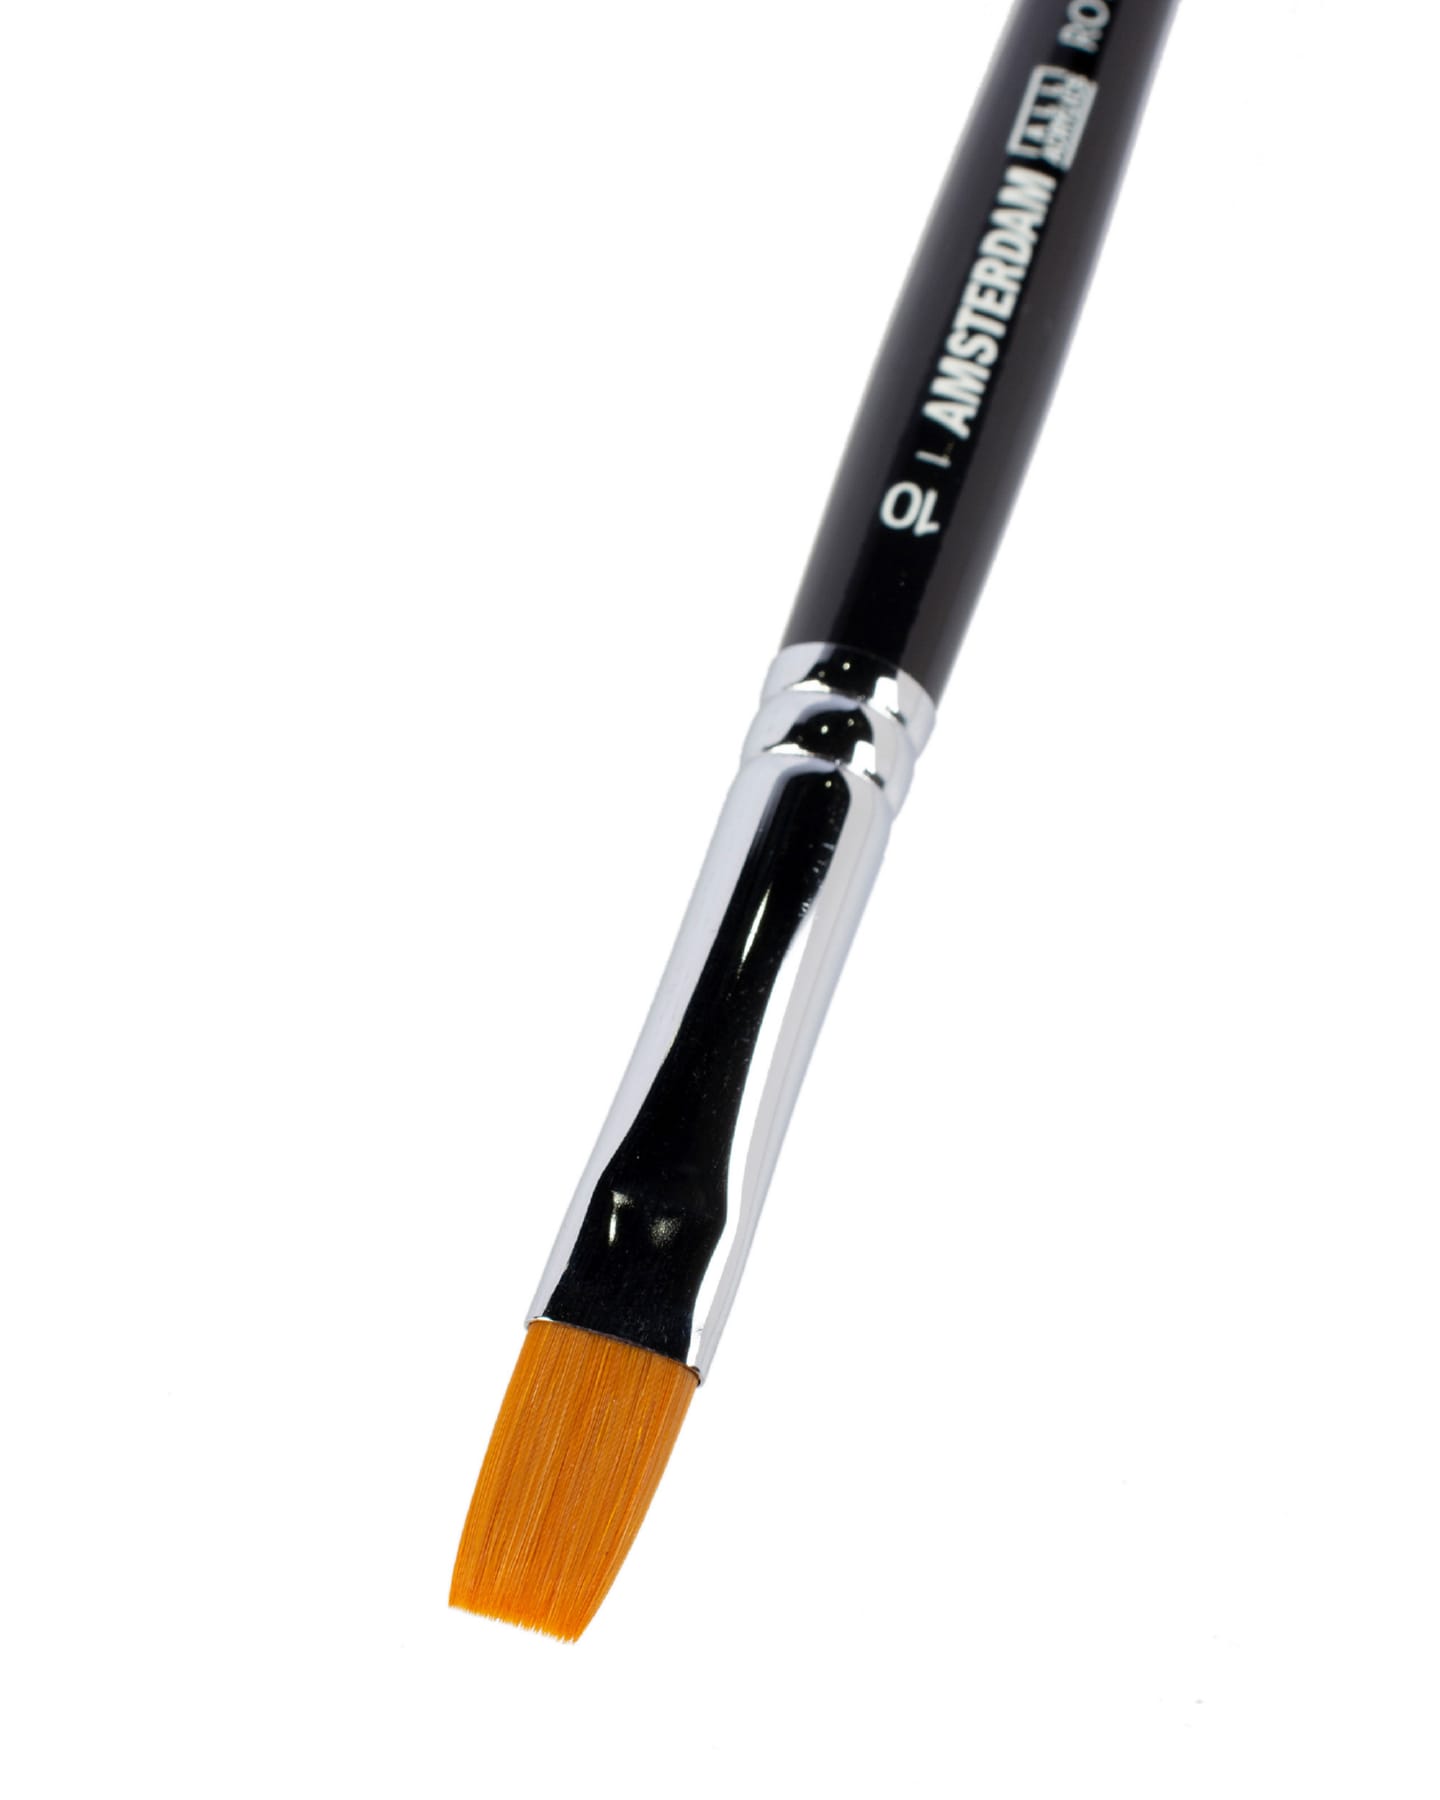 Кисть для акрила Amsterdam 342 синтетика мягкая плоская ручка короткая 5 шт/упак 14 размеров в ассортименте